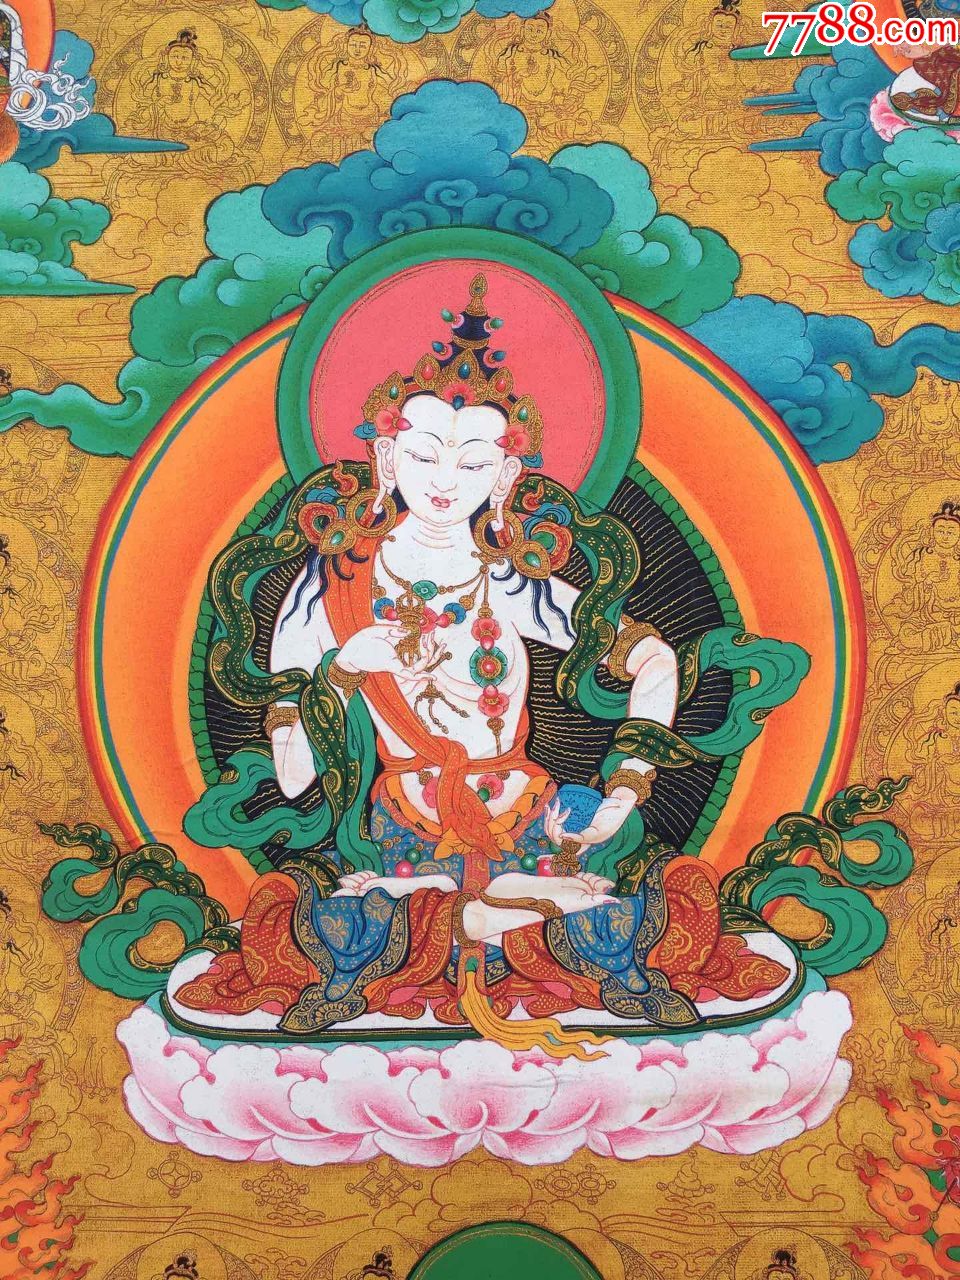 西藏唐卡药师佛菩萨画芯旧唐卡,未装裱,此唐卡早期丝绢纸印刷